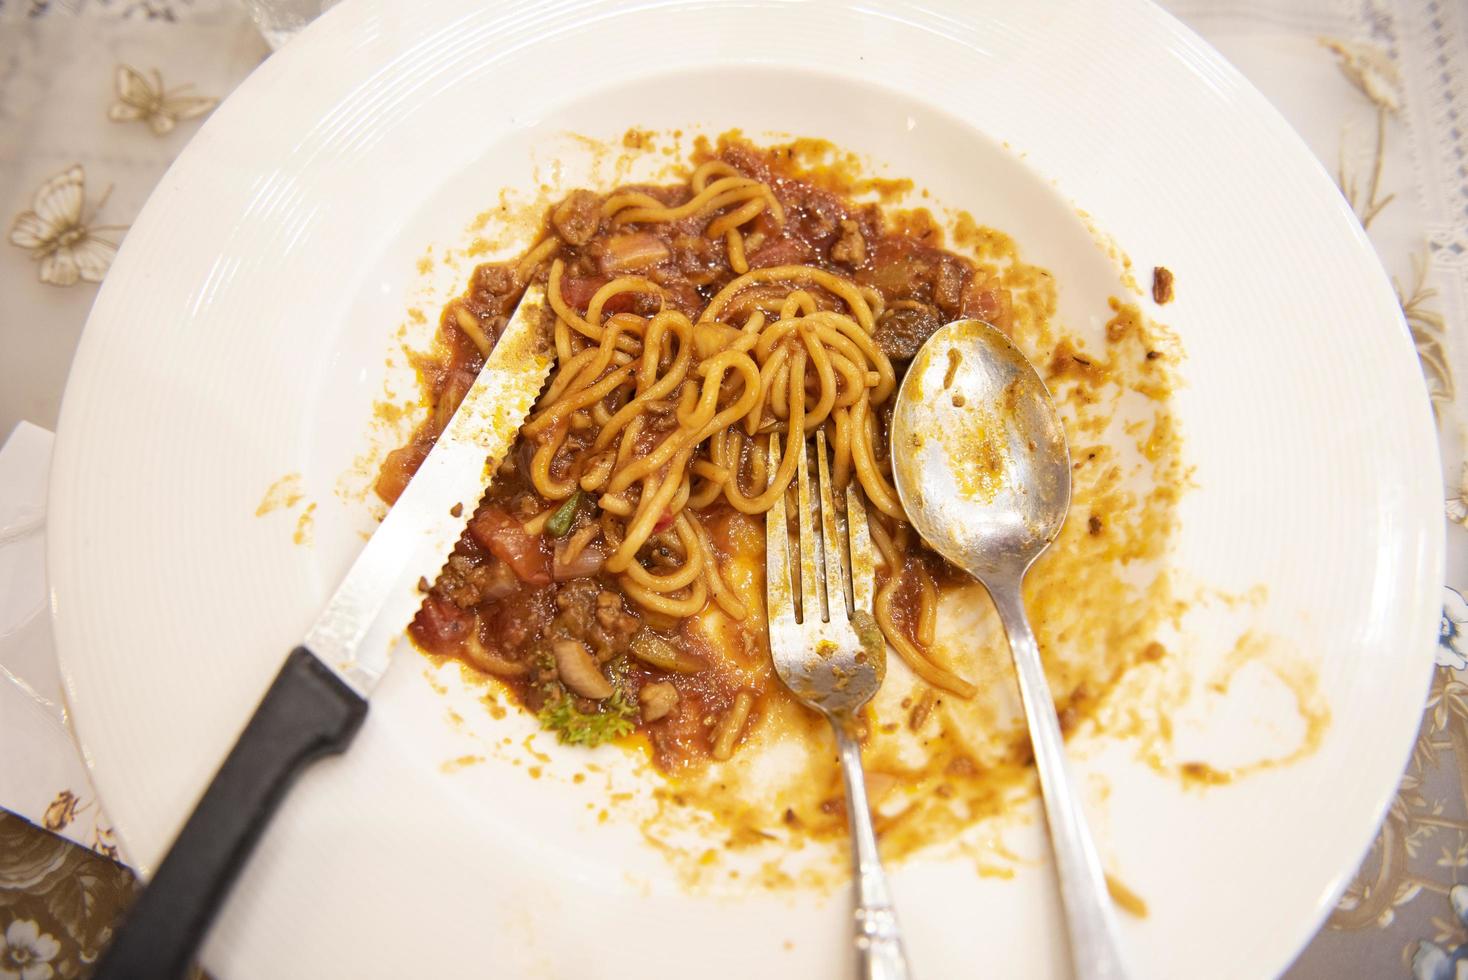 piatto per rifiuti alimentari con spaghetti - piatto dopo aver mangiato cibo, piatti sporchi foto